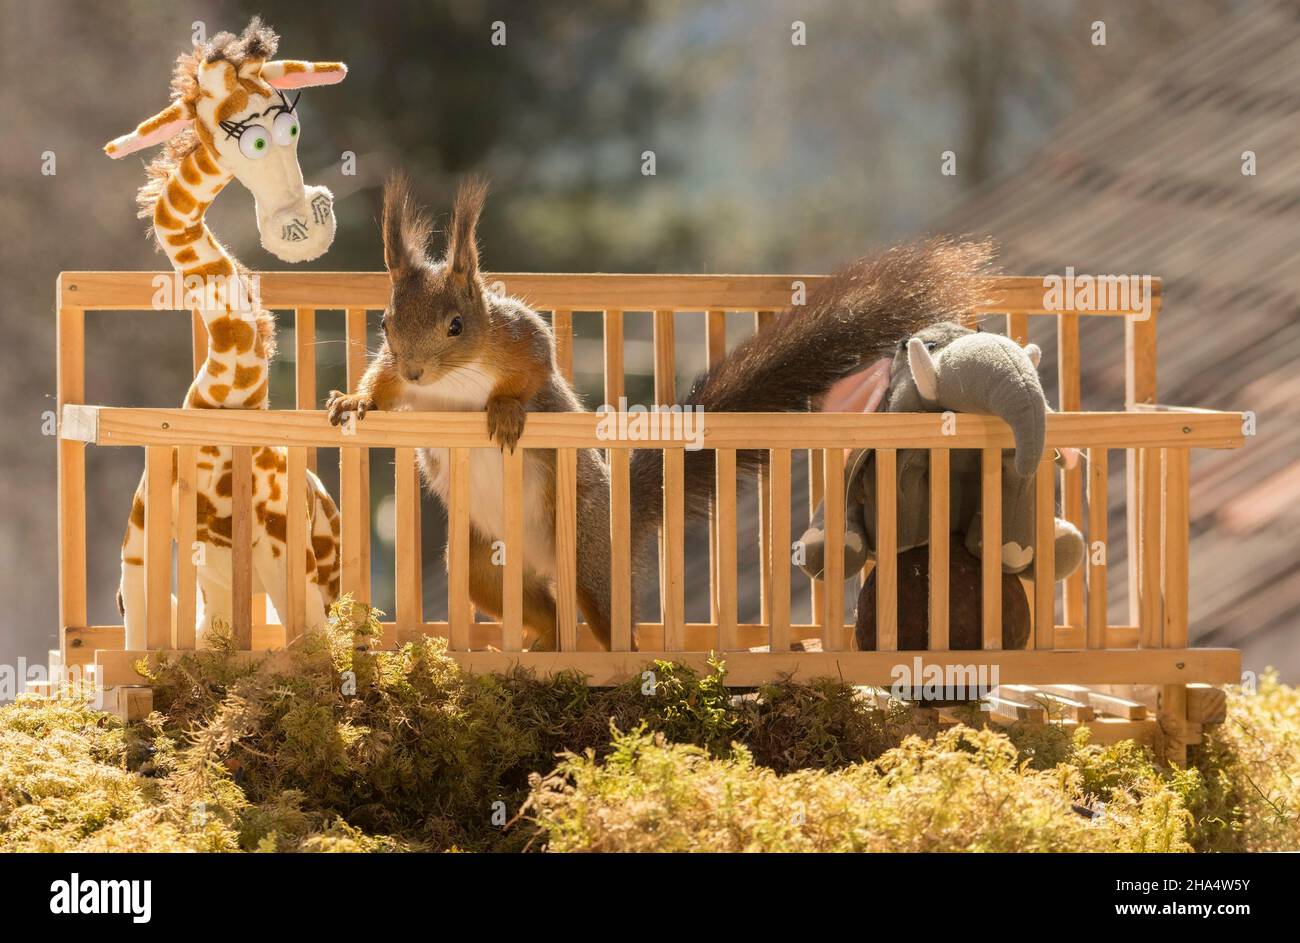 Close up of red squirrel entre une girafe et l'éléphant dans une cage Banque D'Images